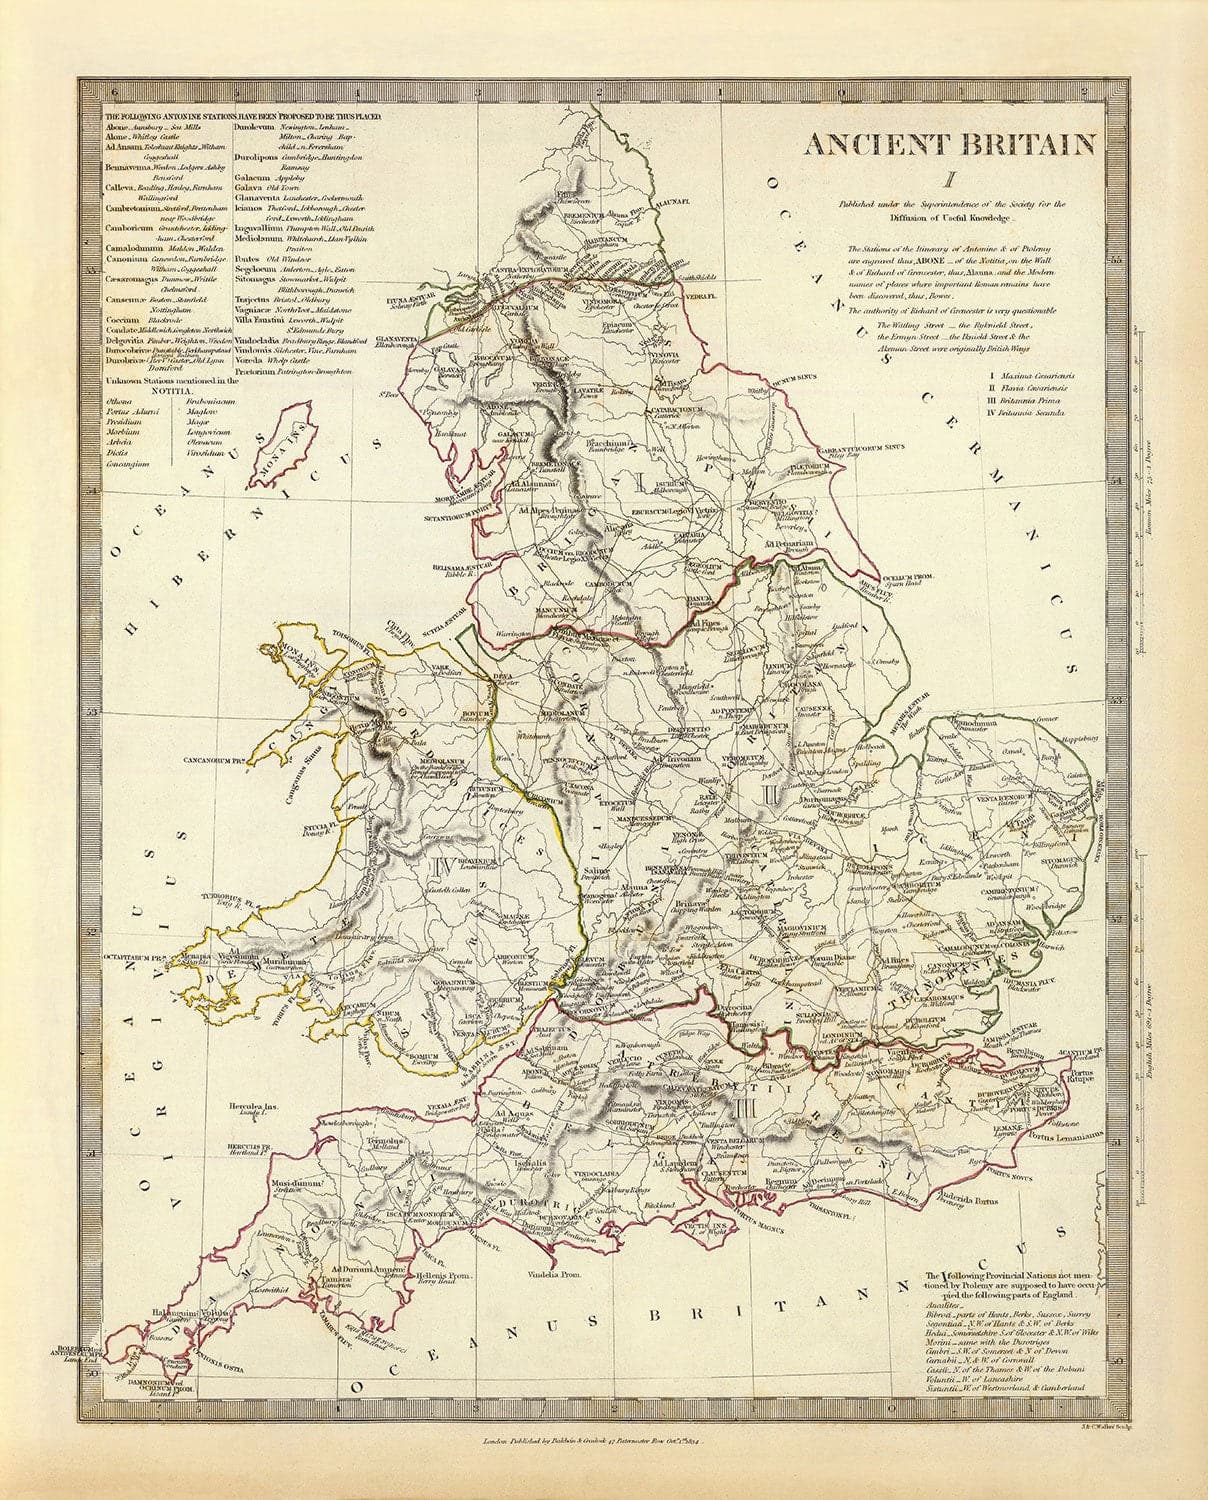 Alte Karte des alten Britannien, 1834 - Römisches Britannien, keltische Stämme, Silures, Dobunni, Parisi, Trinovantes, Regni